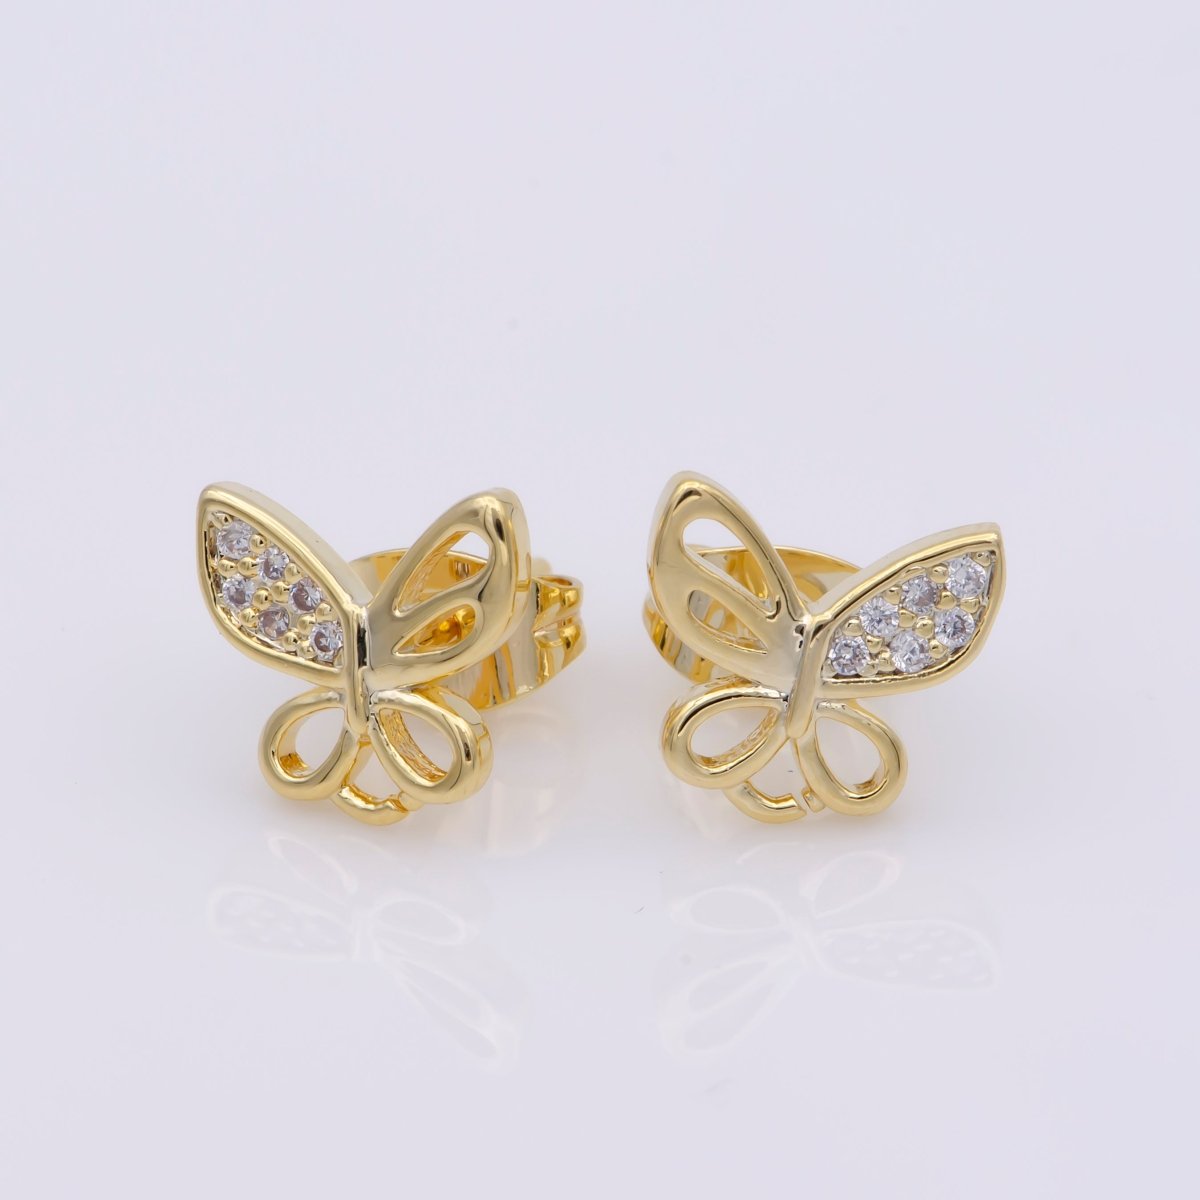 24k Vermeil Gold Earrings, Stud Earring, Butterfly Earring, Gift for Her, Earrings for Women, Everyday Wear Earrings, Cubic Zirconia Jewel, K-747 - DLUXCA